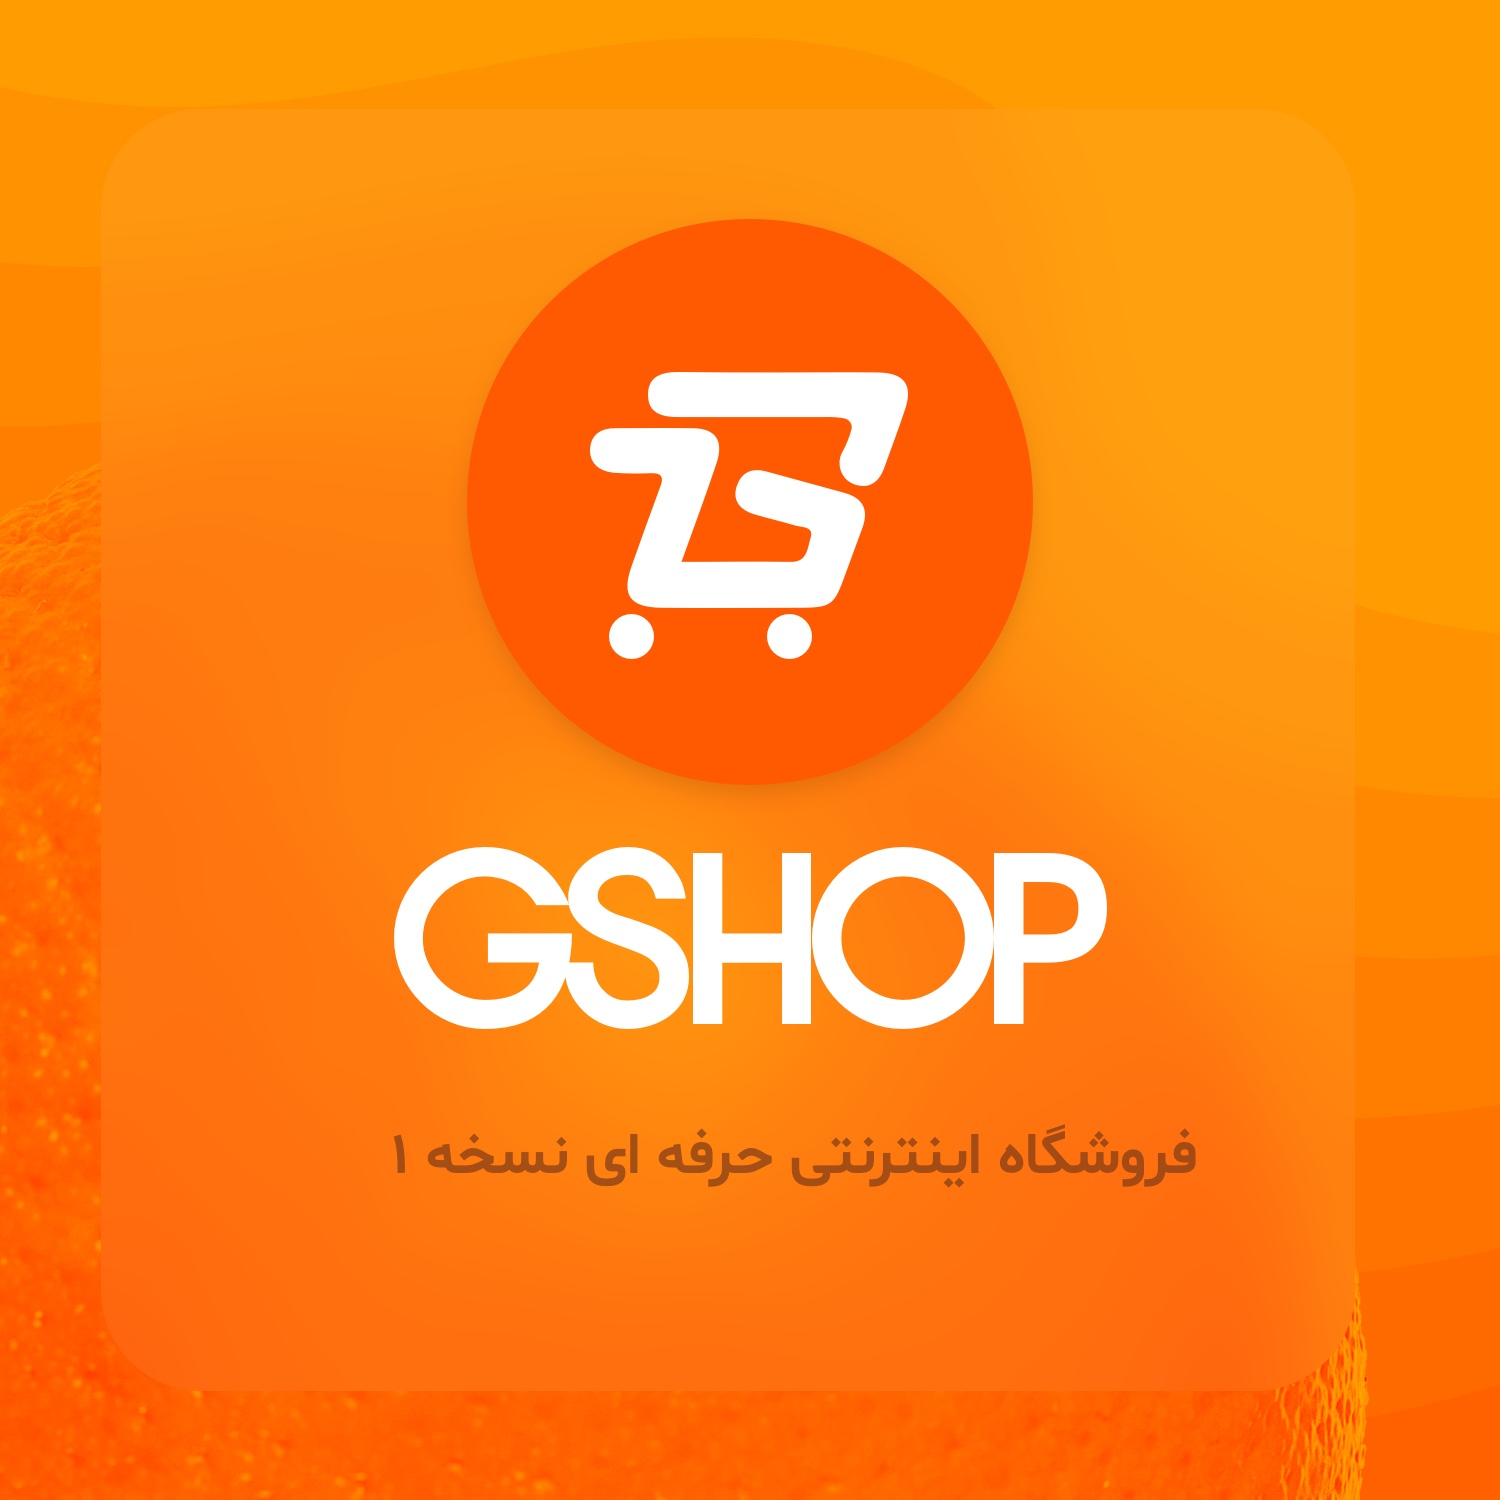 فروشگاه اینترنتی gshop1